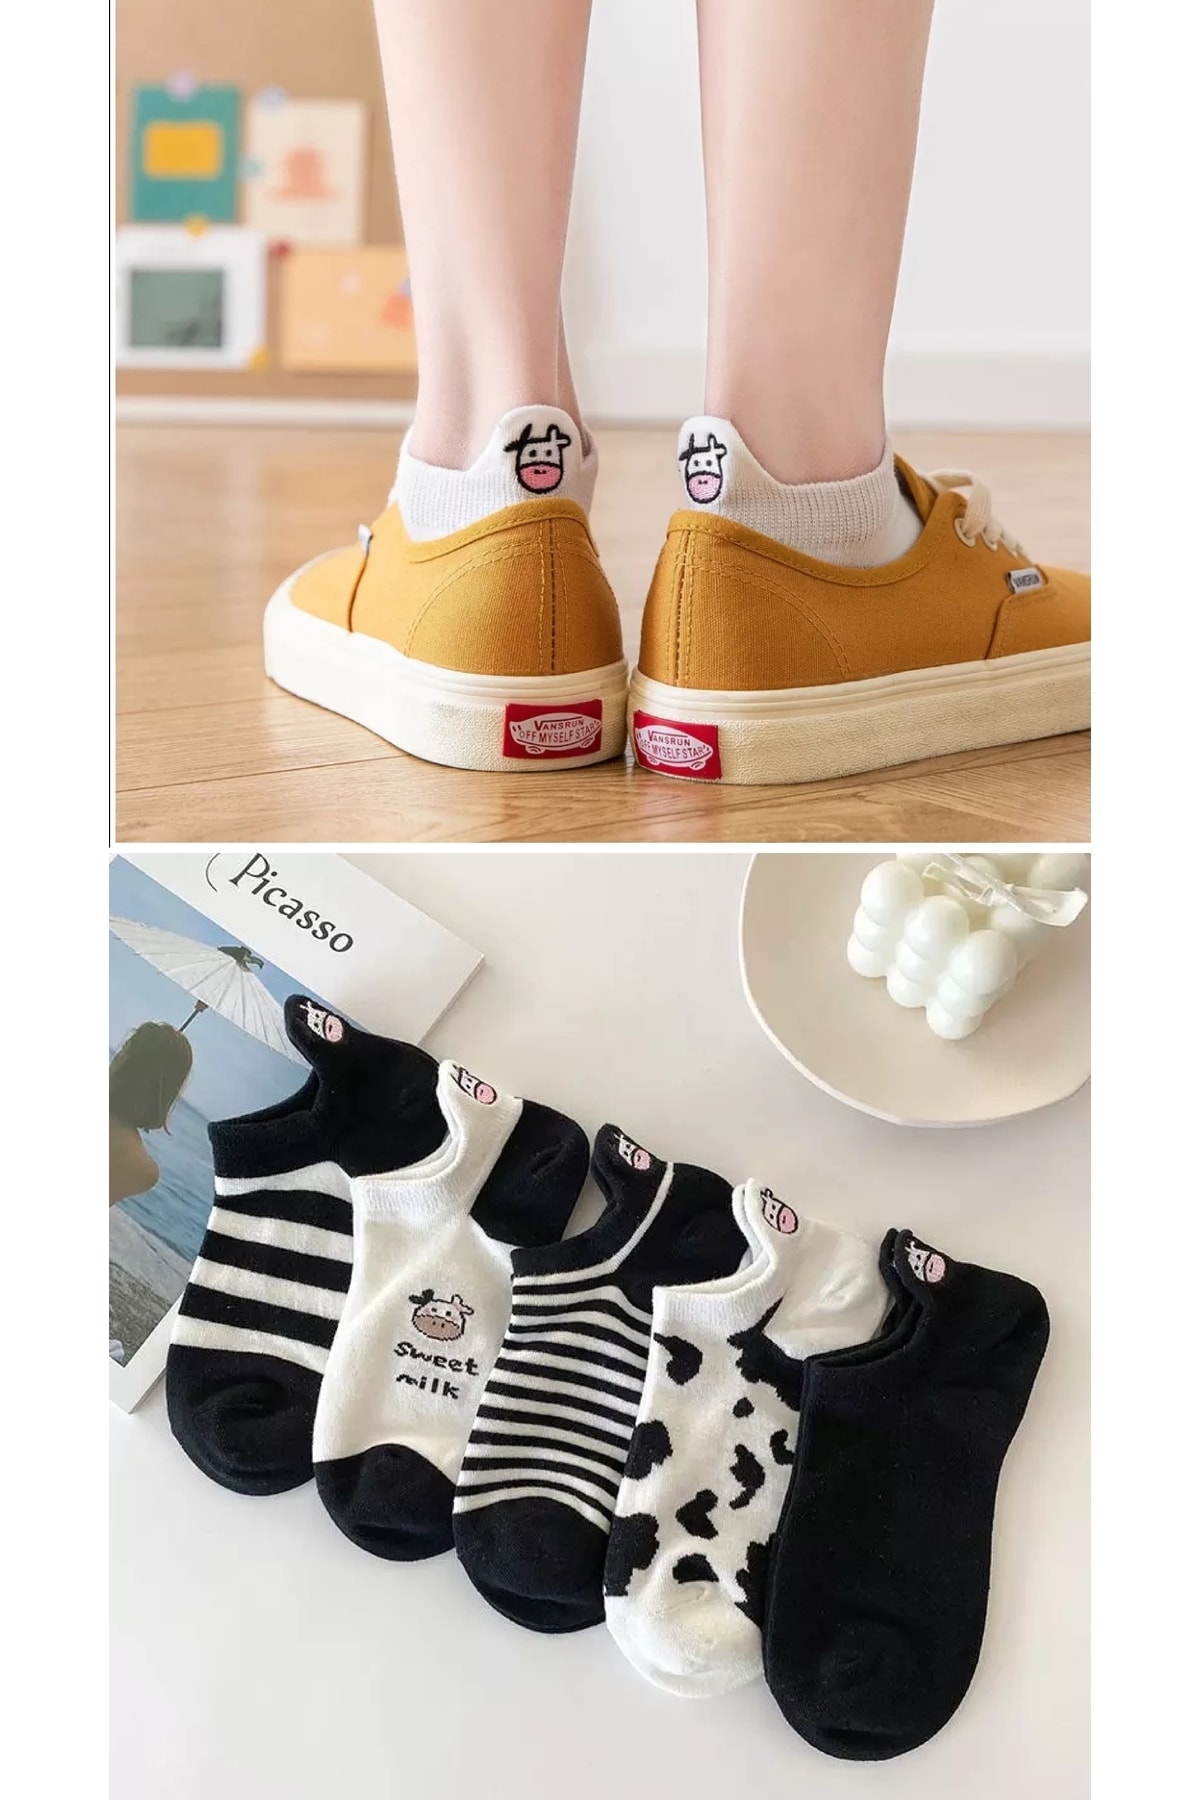 çorapkolik 3'lüunisex Siyah-beyaz Inek Desenli Pamuklu Nakışlı Işlemeli Çorap 3 Çift